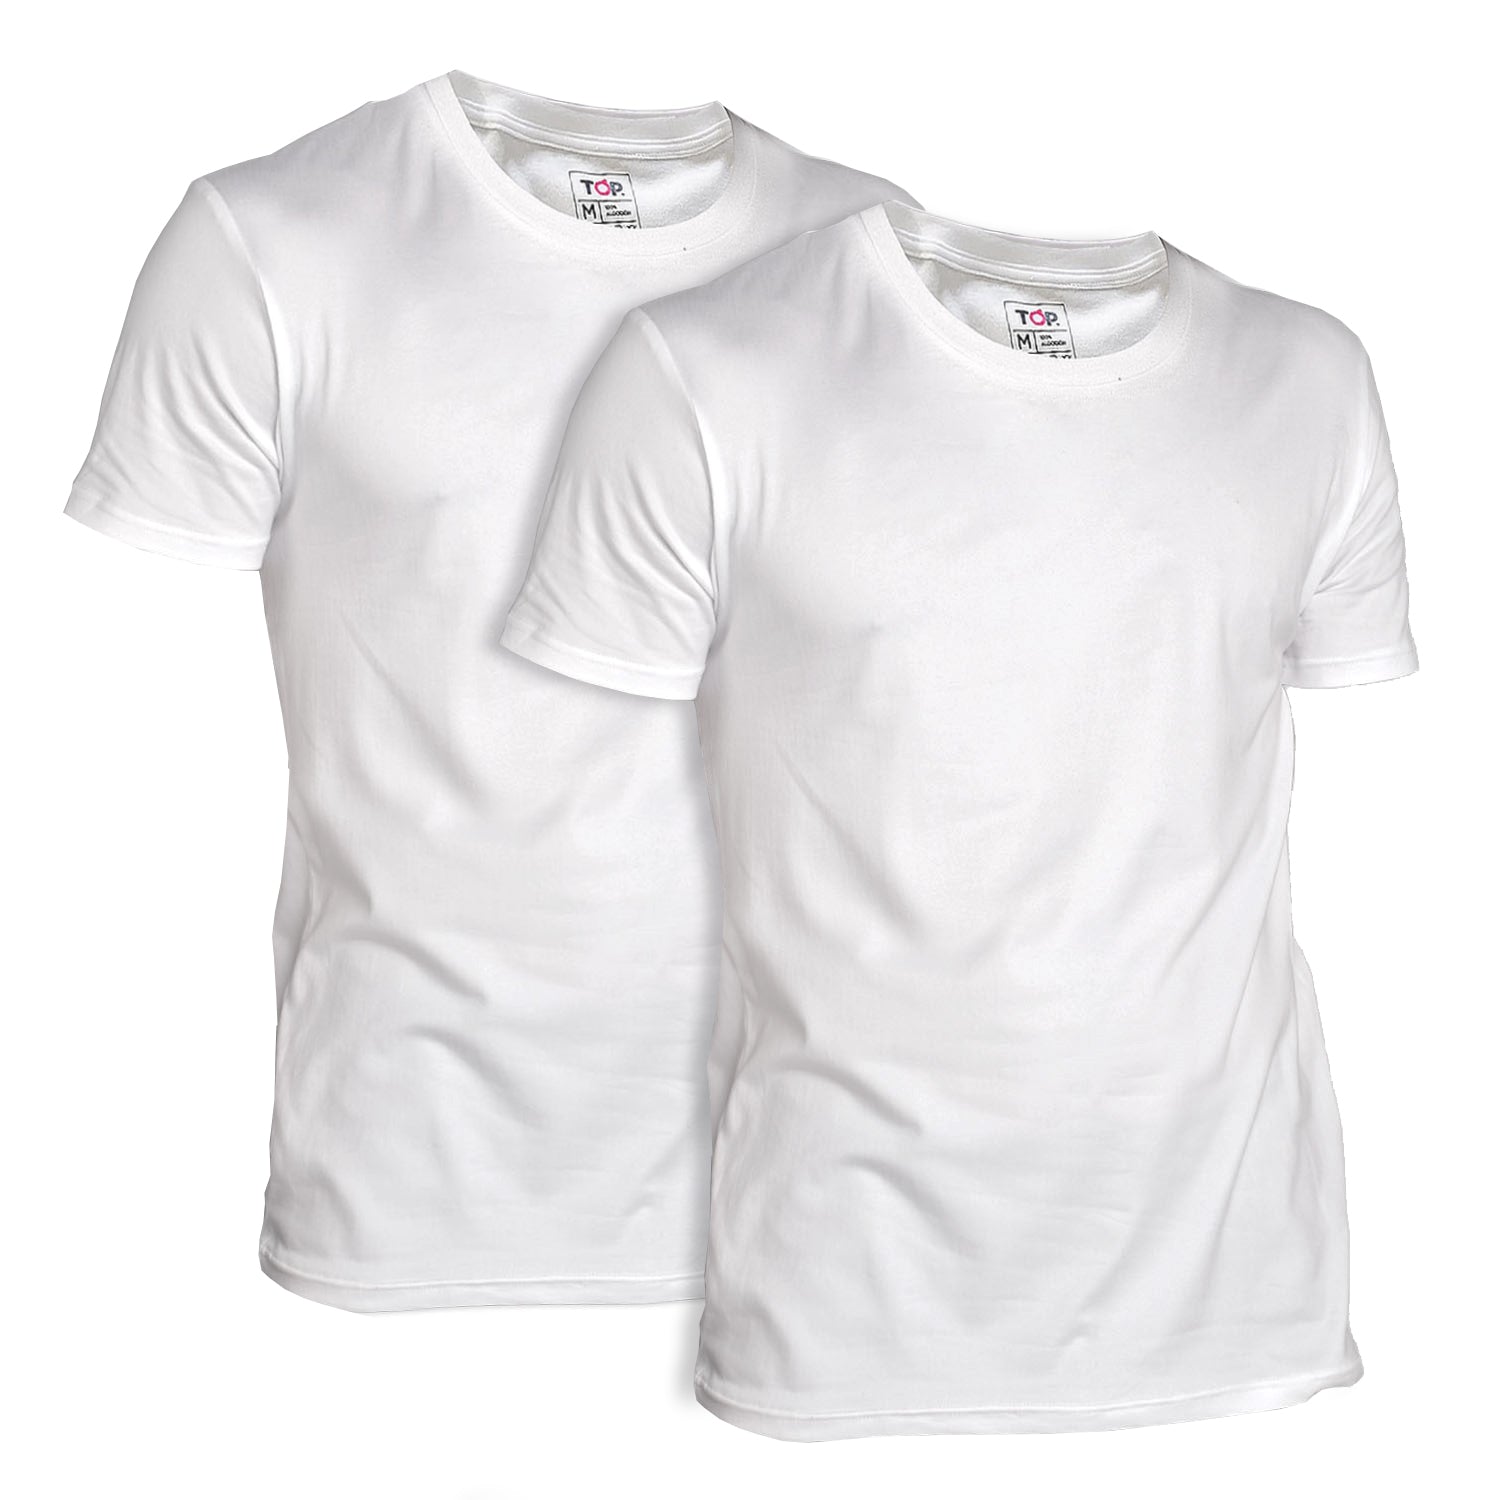 Camisetas Blancas Manga Corta Algodón Pack 2